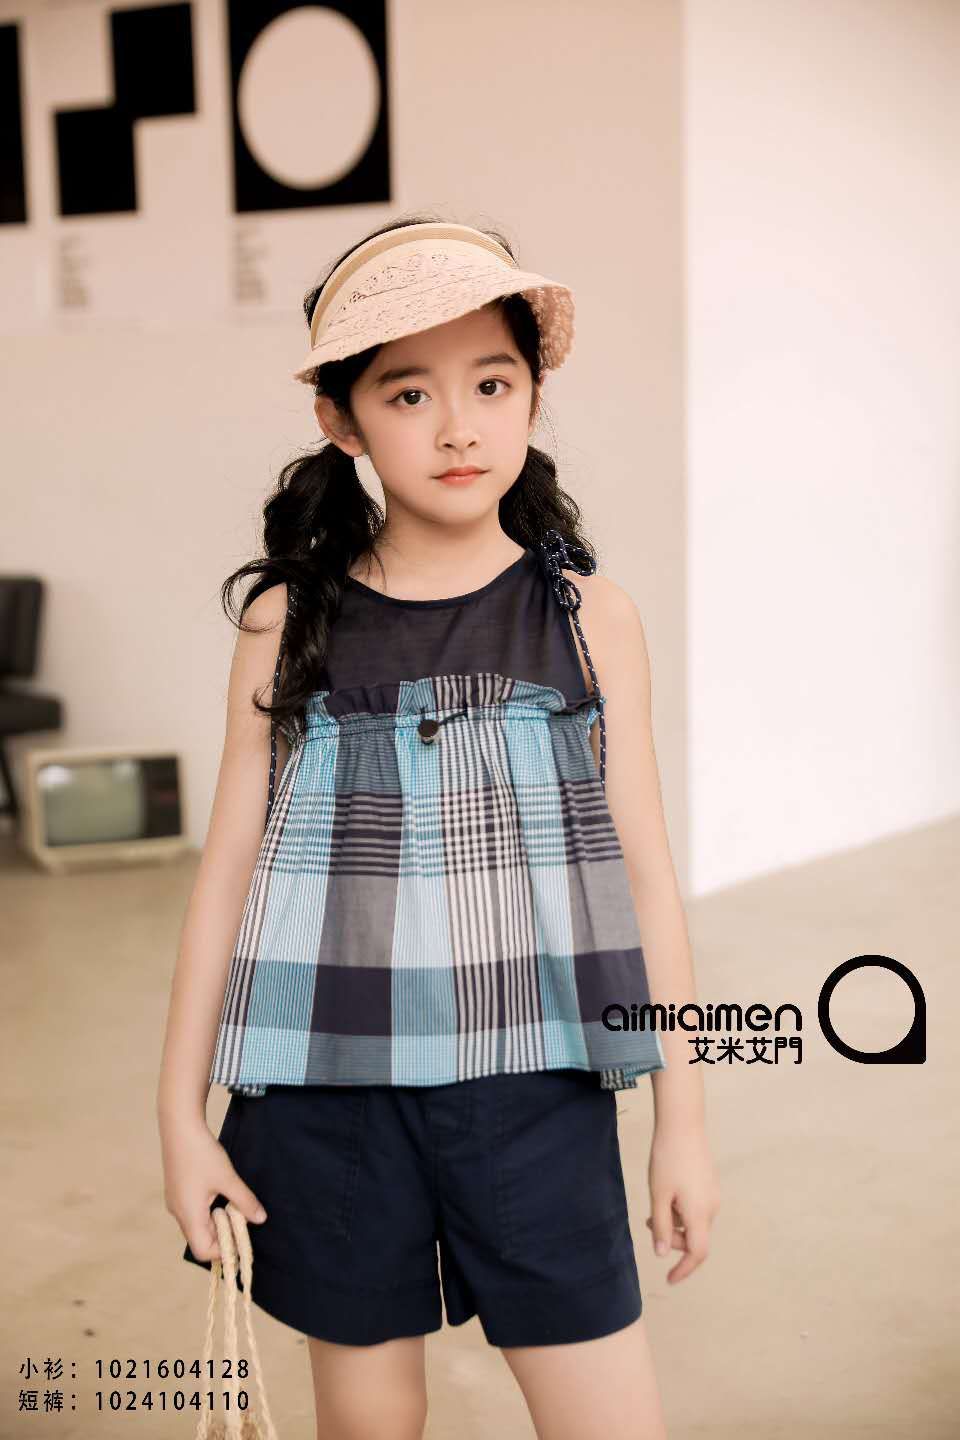 艾米艾门夏款女童小衫尺寸国际风图